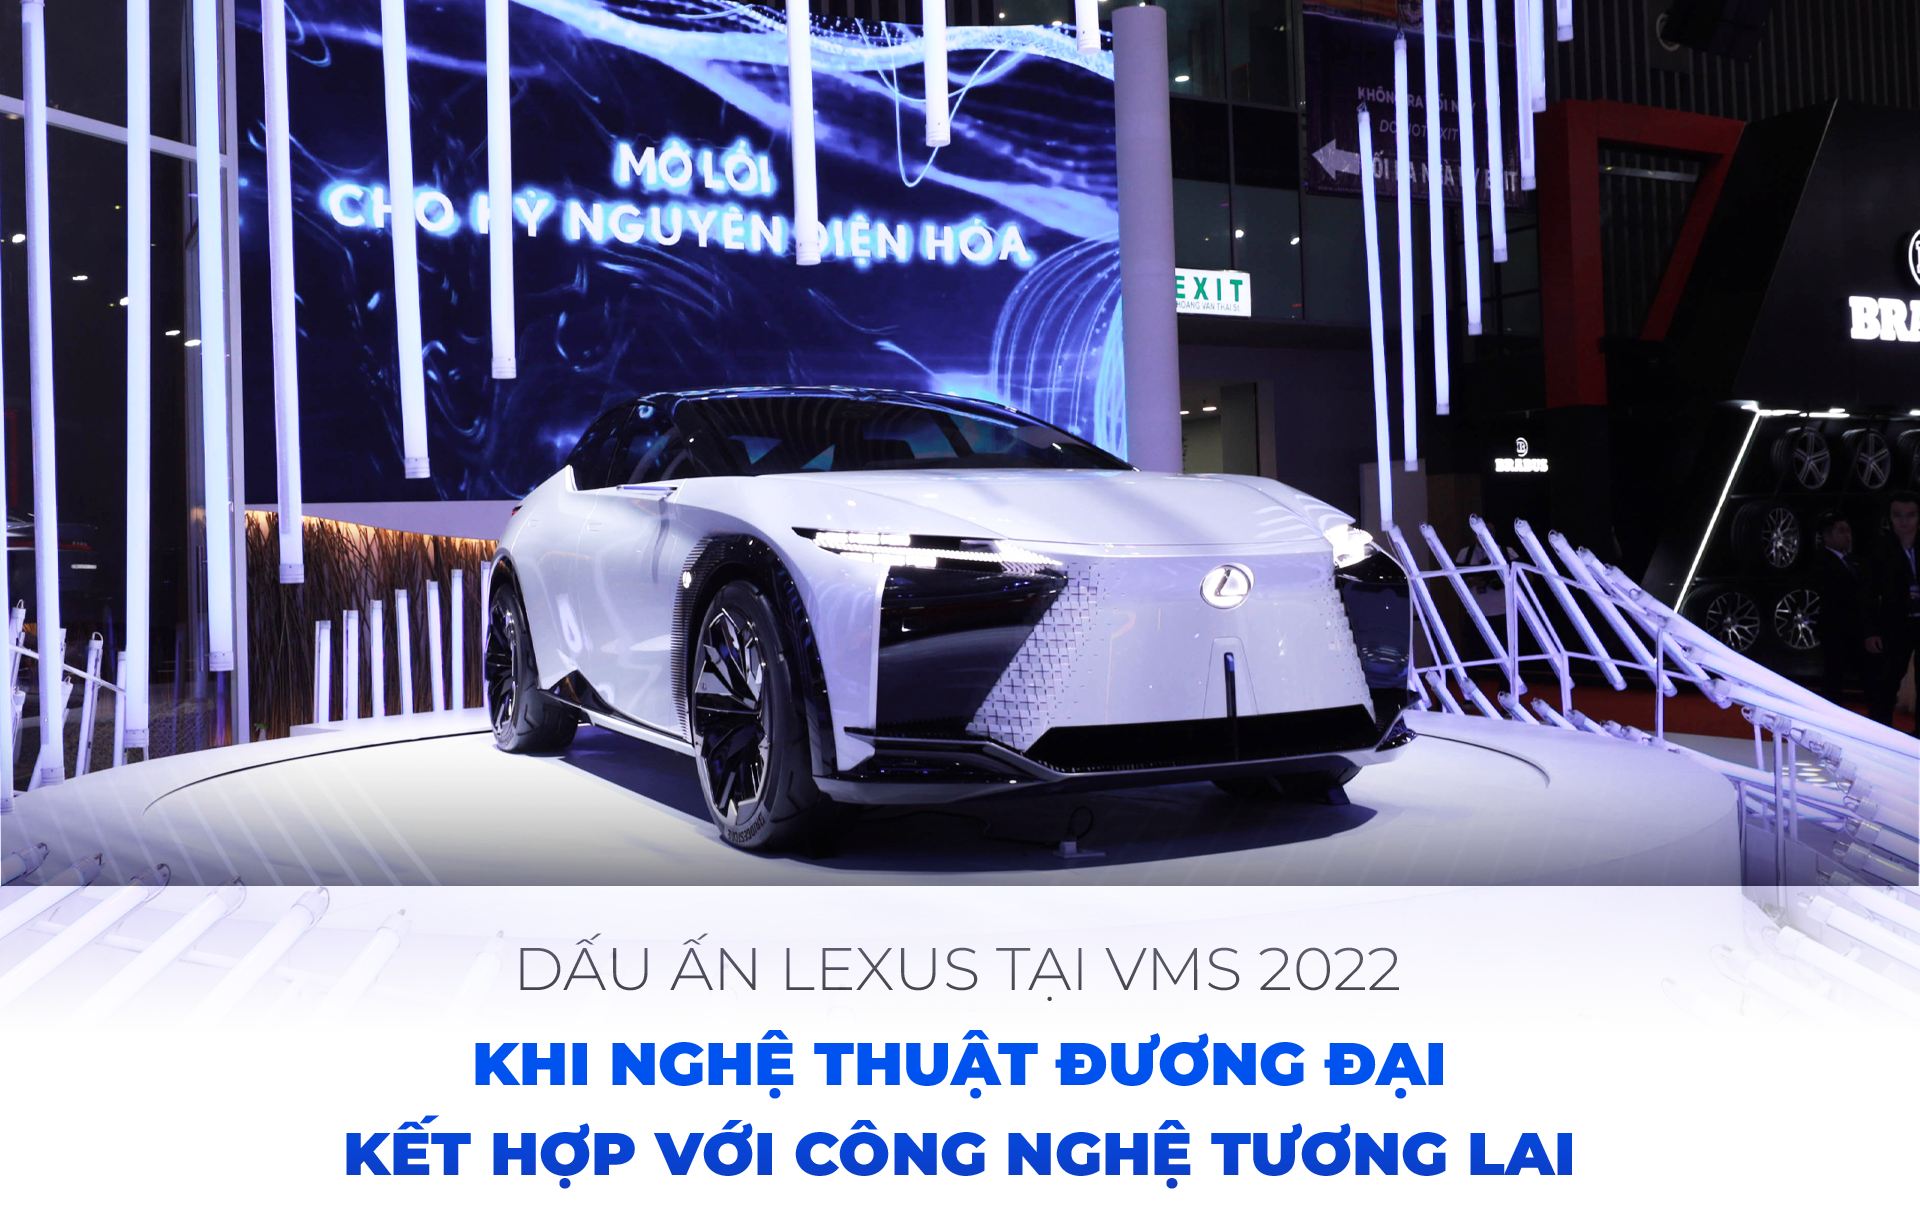 Dấu ấn Lexus tại VMS 2022 Khi nghệ thuật đương đại kết hợp với công nghệ tương lai - 1